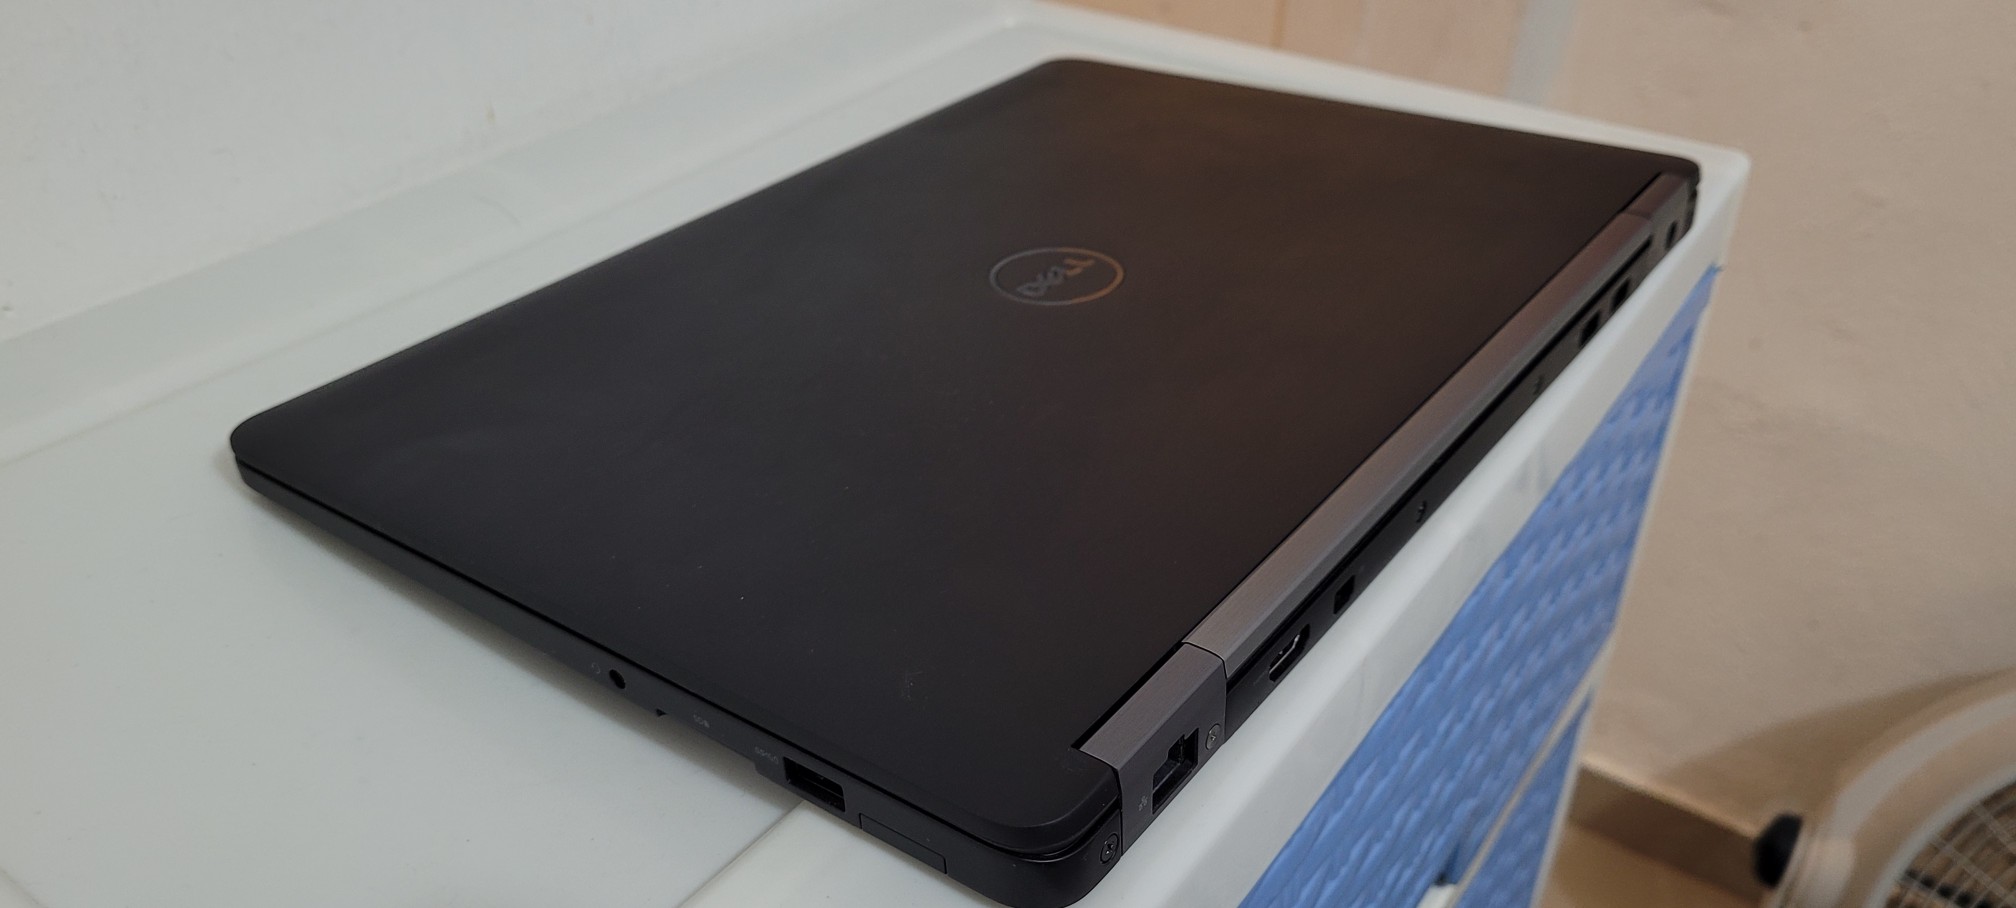 computadoras y laptops - Dell 7480 14 Pulg Core i5 7ma Gen Ram 8gb Disco 128gb SSD full HD 2